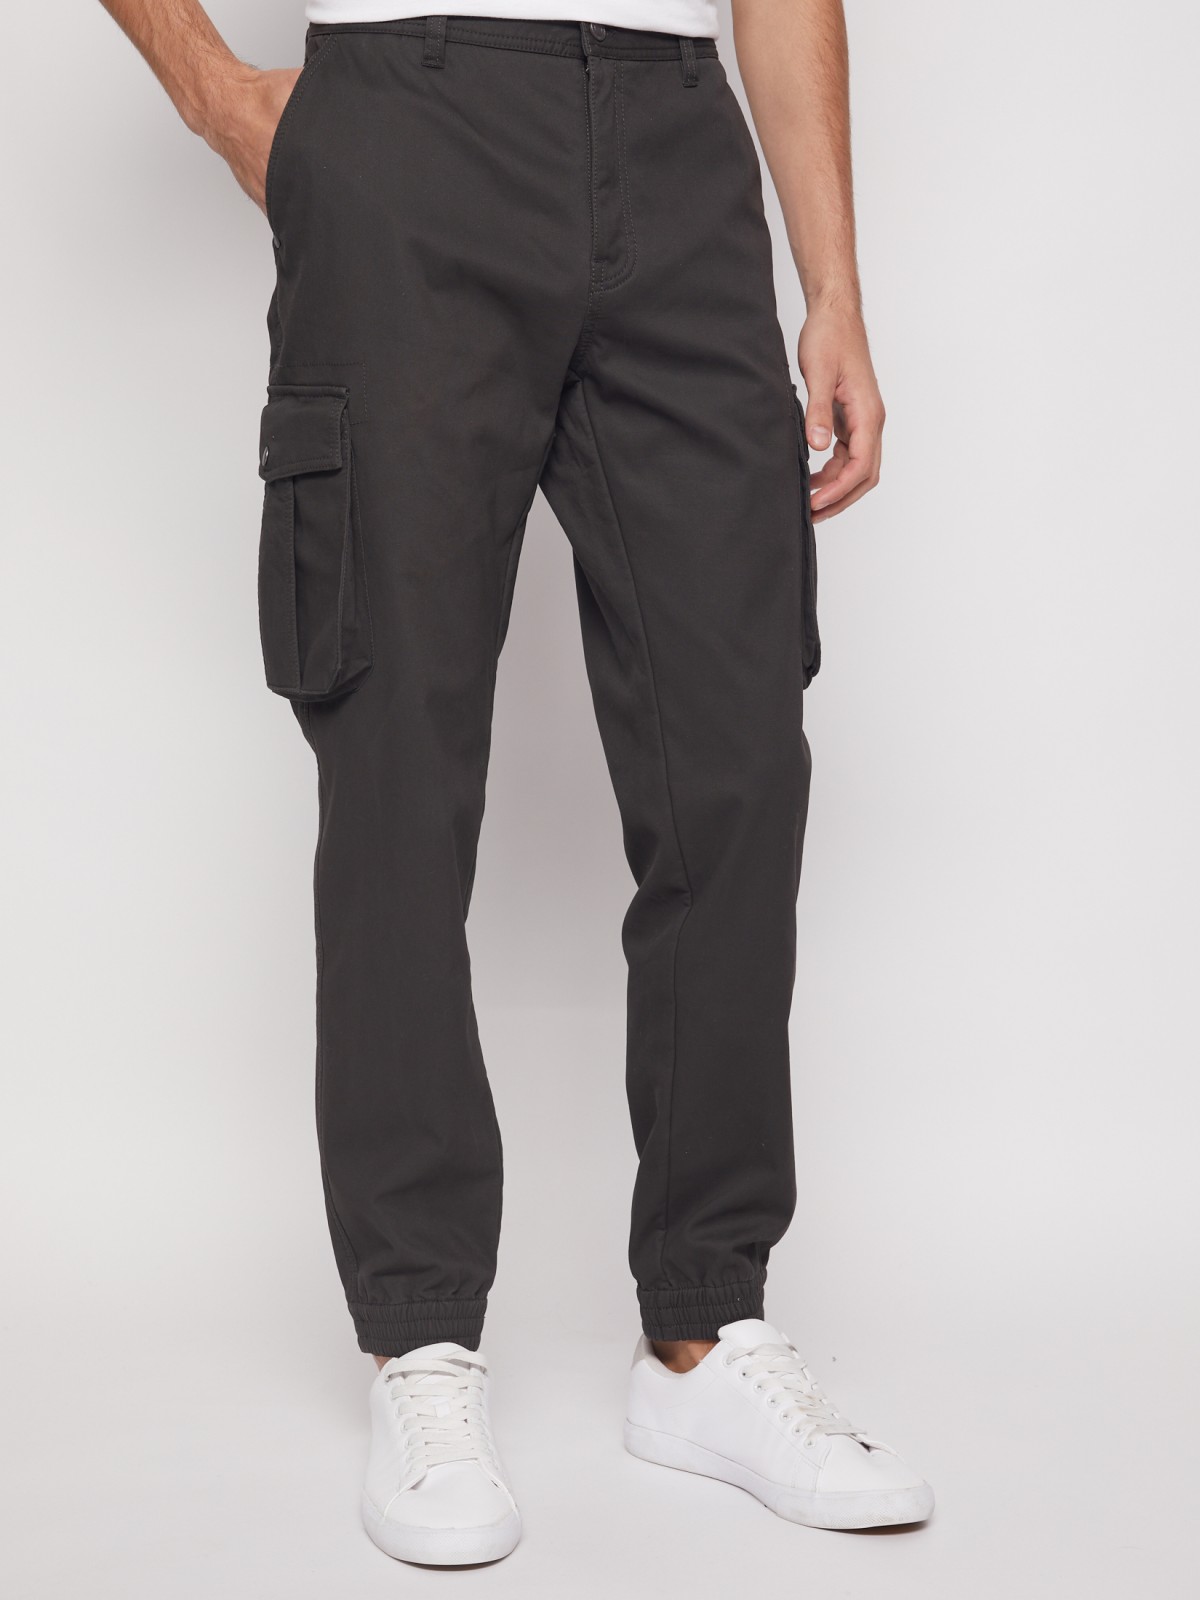 Хлопковые брюки-джоггеры с карманами карго zolla 21143730L021, цвет хаки, размер 28 - фото 4